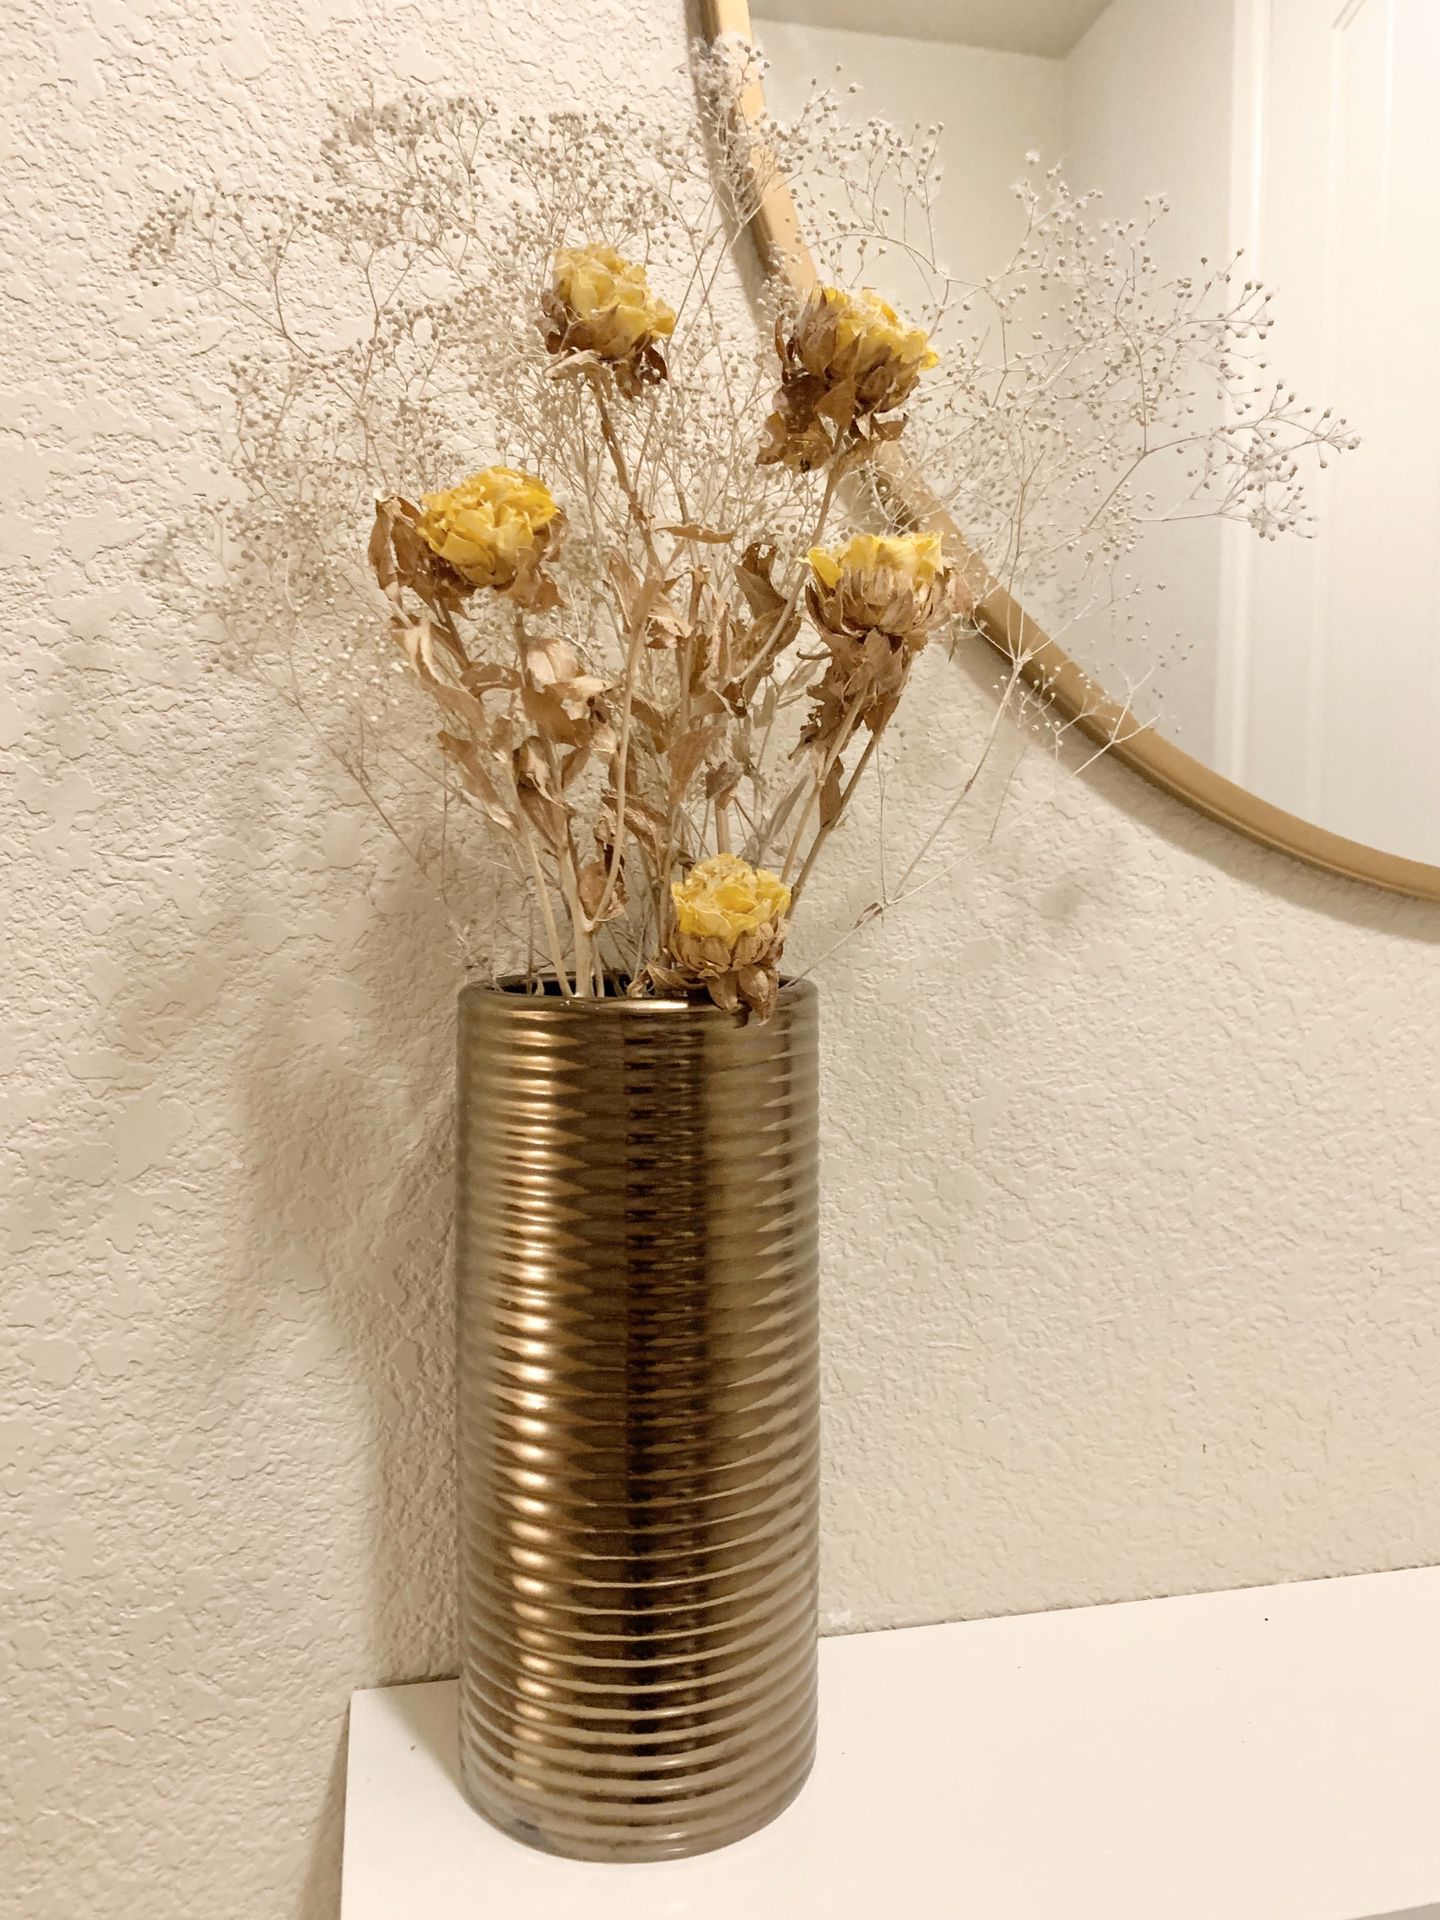 Dried flowers & vase